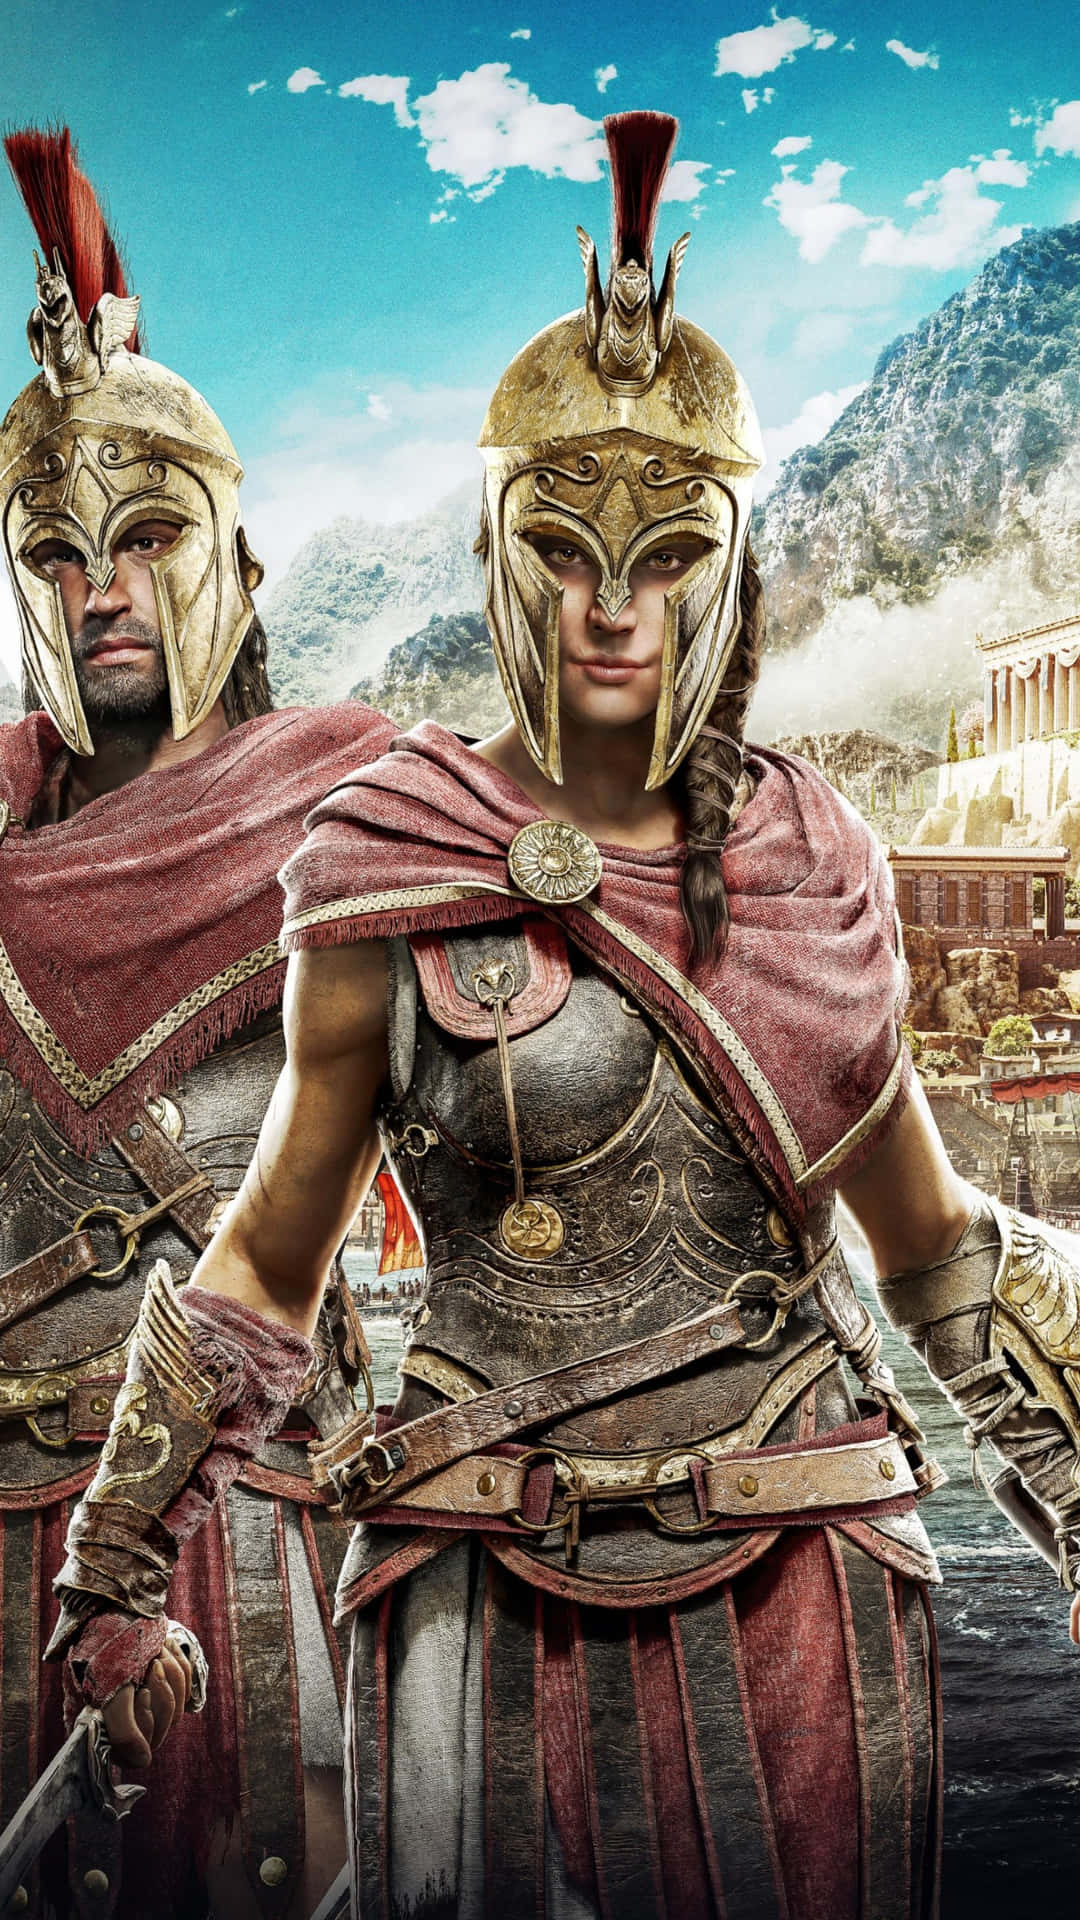 Scoprile Leggende Perdute Dell'antica Grecia Su Android Con Assassin's Creed Odyssey.